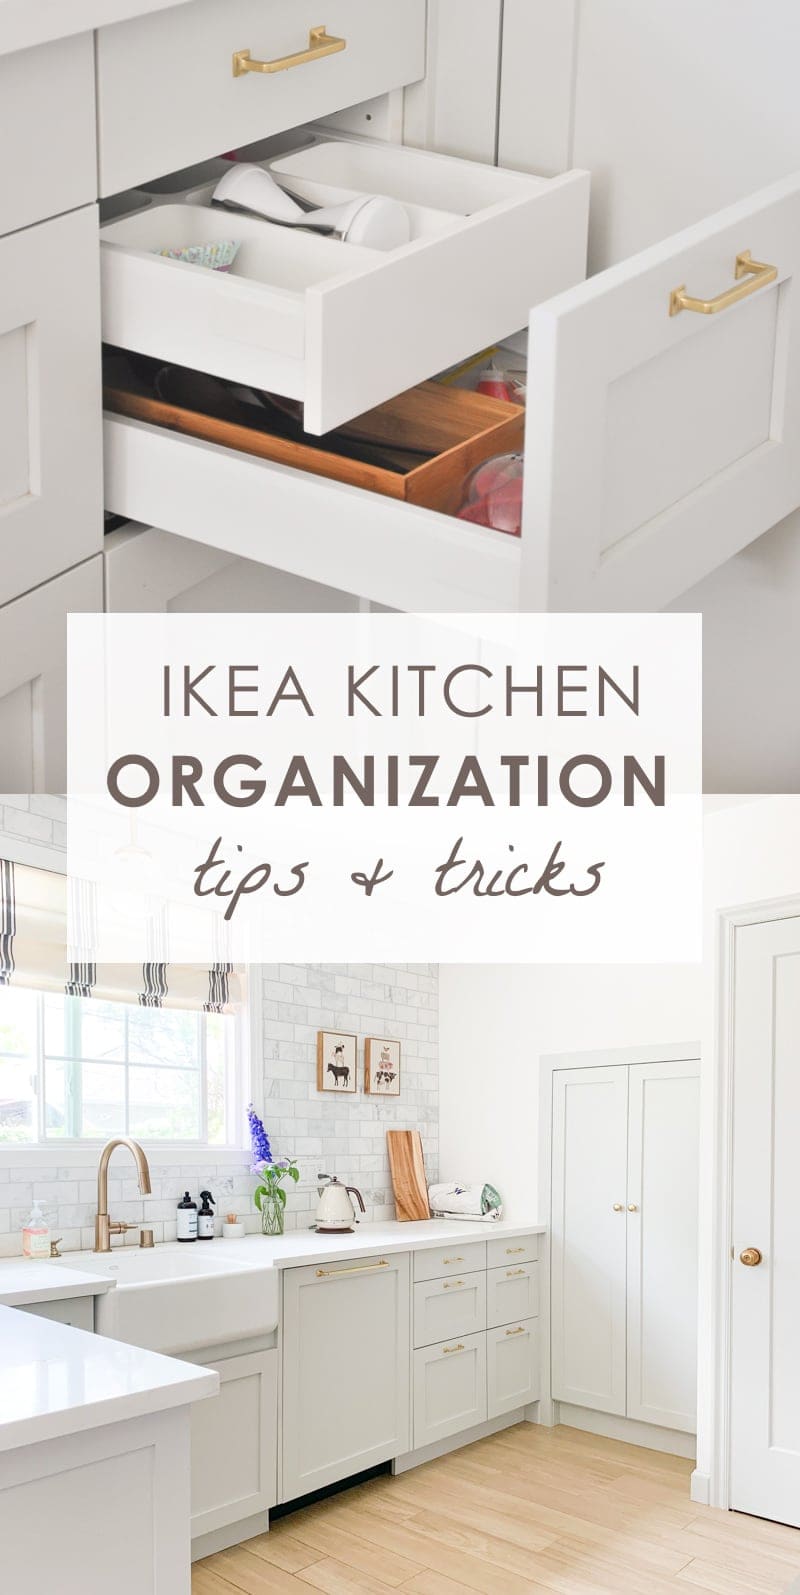 IKEA Kitchen Organization Ideas and Hacks   IKEA Kitchen Tour ...